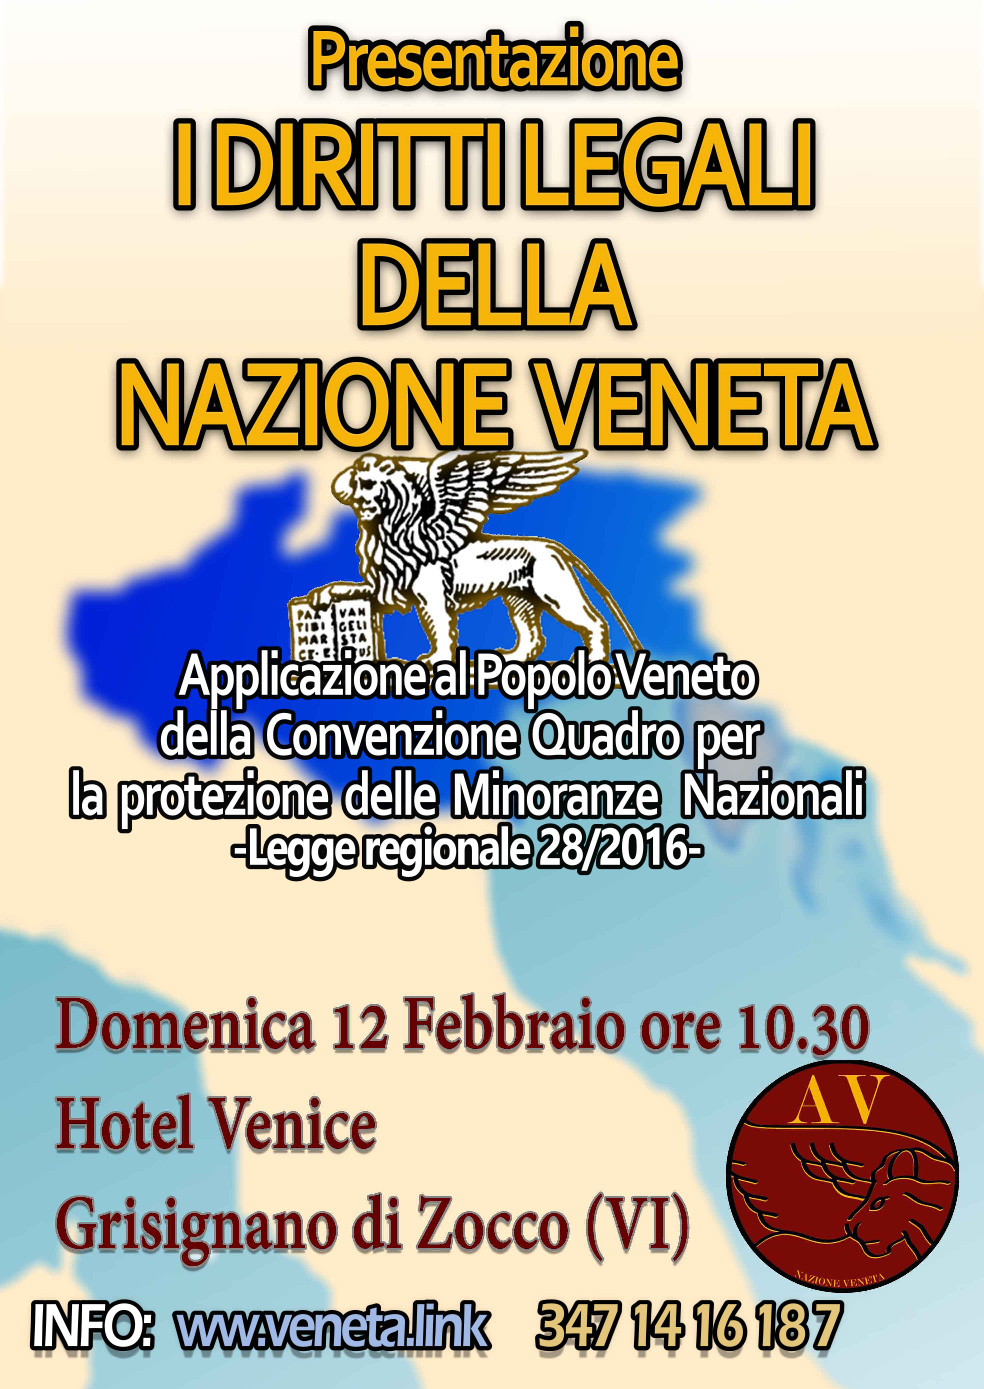 Vorstellung der neuen Rechte des venezianischen Volkes mit dem Regionalgesetz 28 die 2016